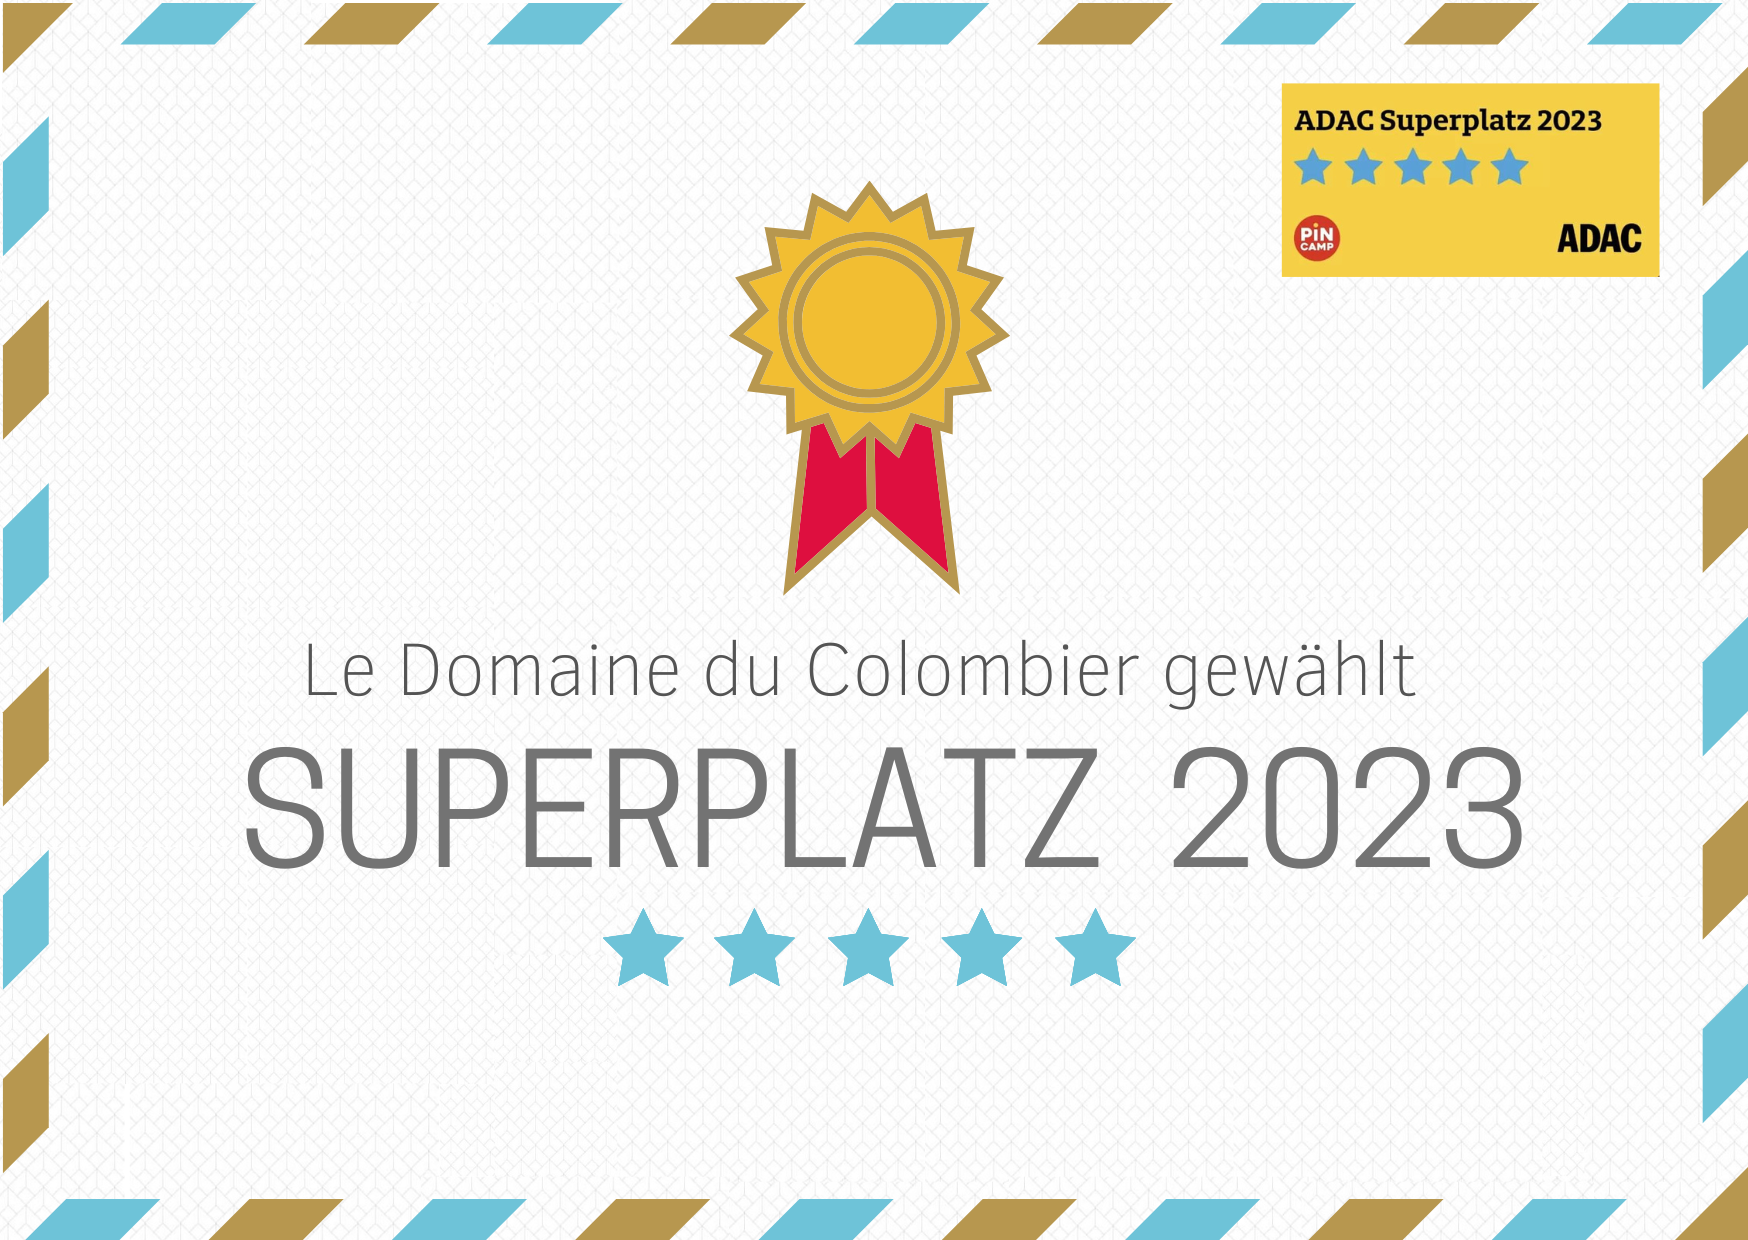 Superplatz 2023